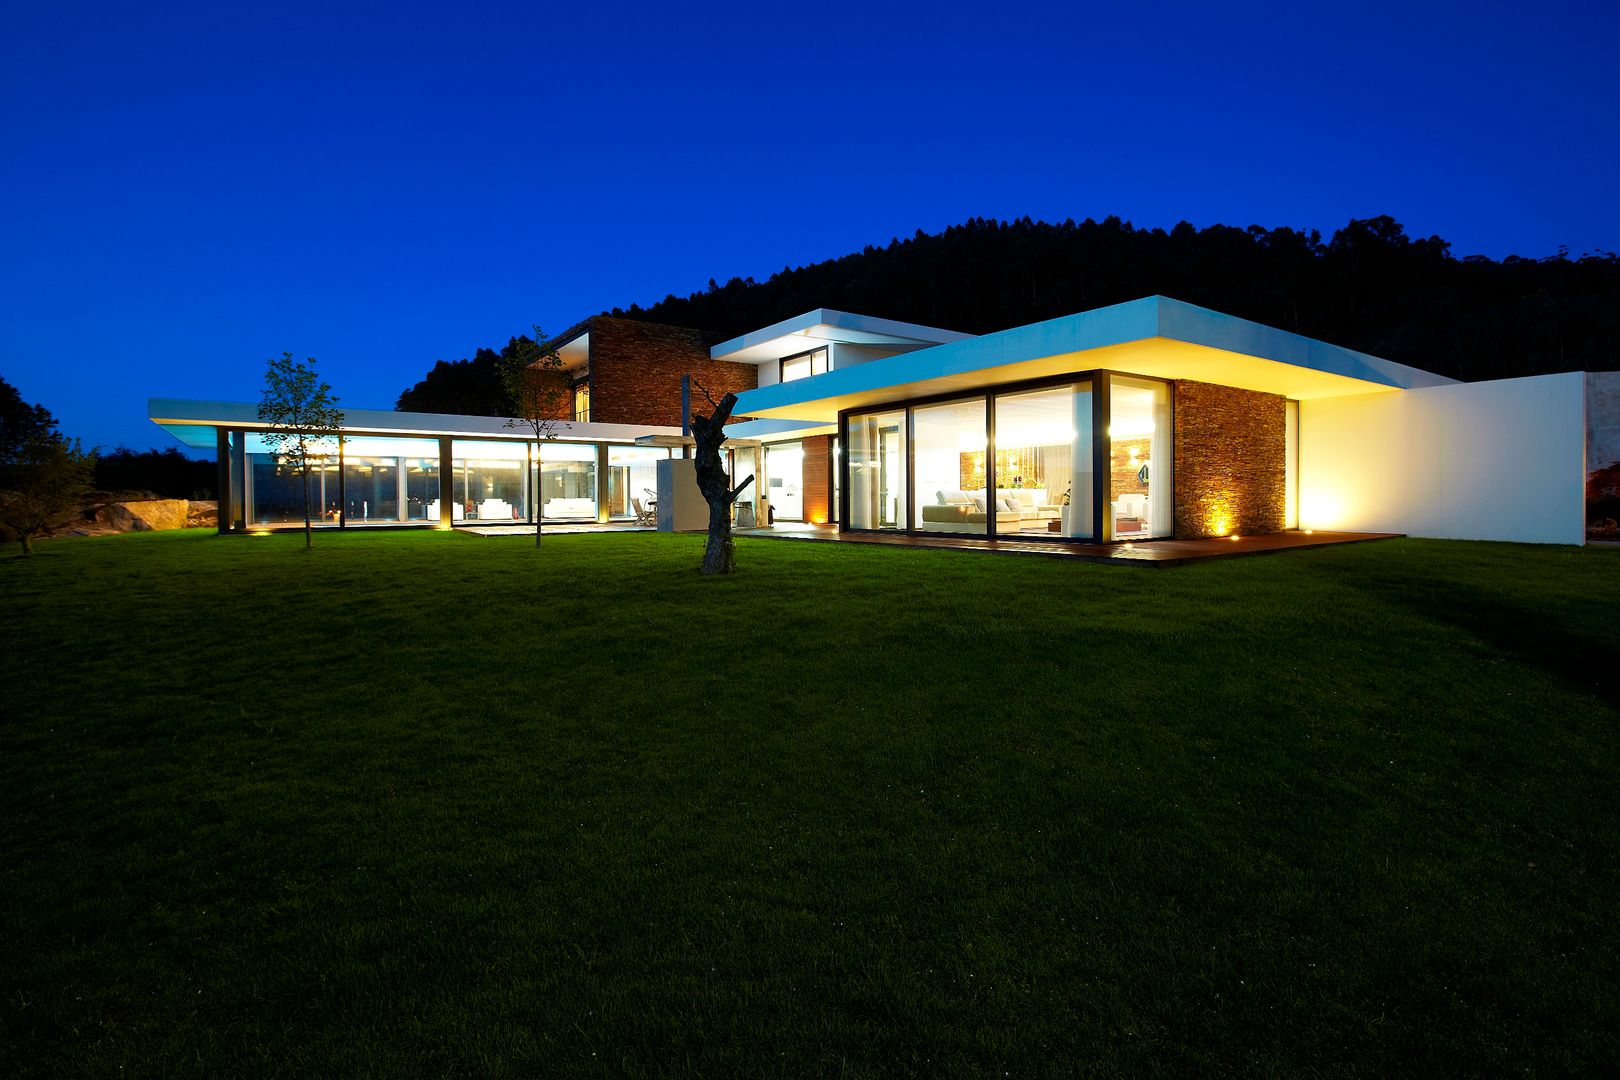 Casa moderna de dimensões generosas e piscina interior, Risco Singular - Arquitectura Lda Risco Singular - Arquitectura Lda 미니멀리스트 주택